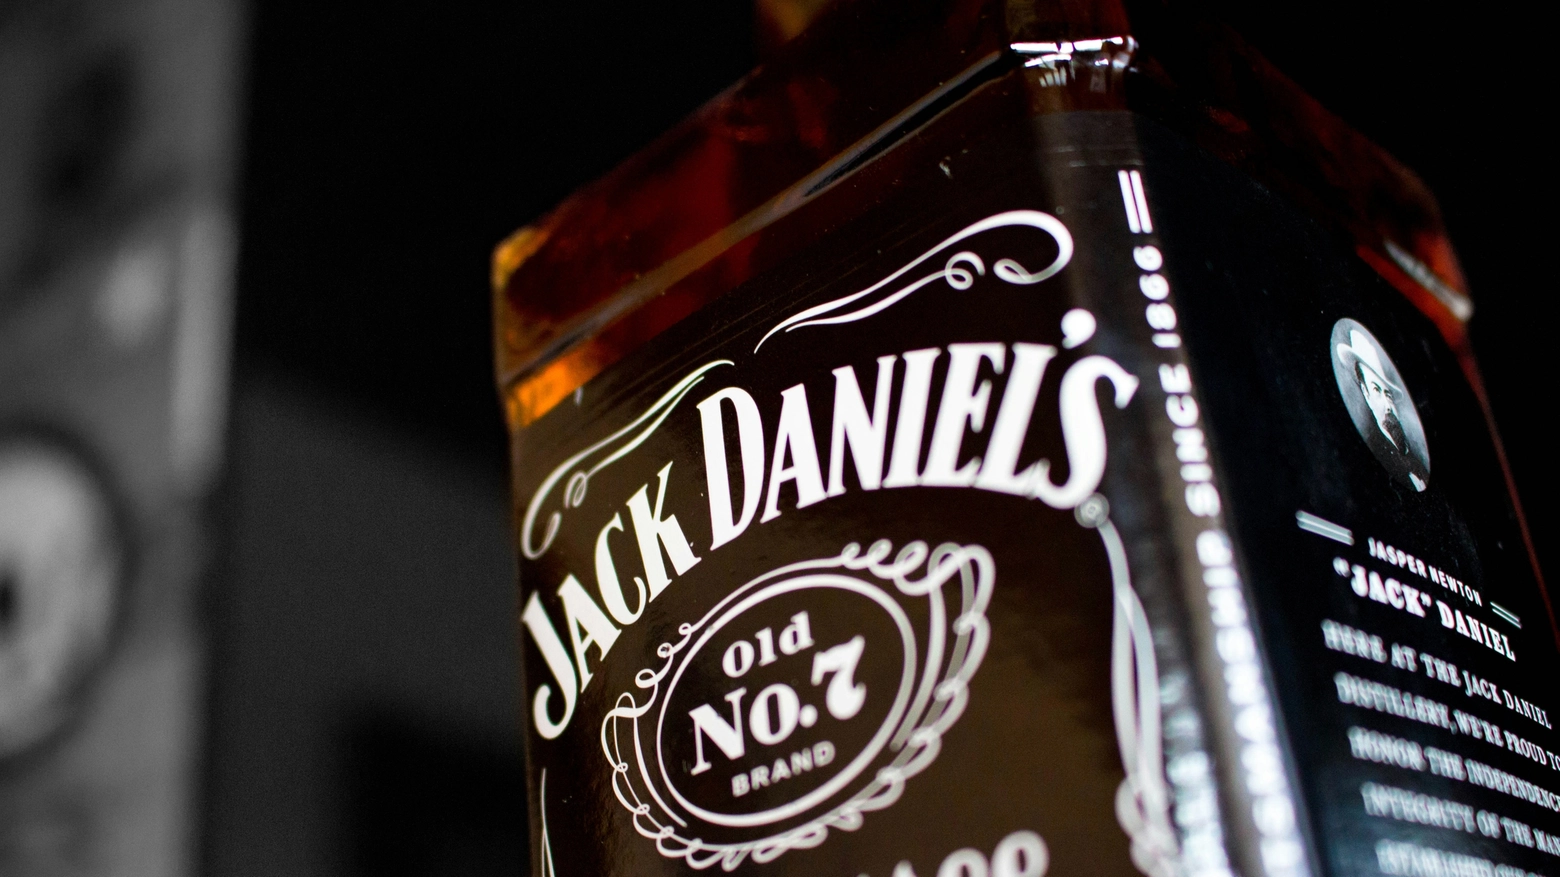 Brown-Forman venderà anche il Jack Daniel's in Italia con la propria rete di distribuzione